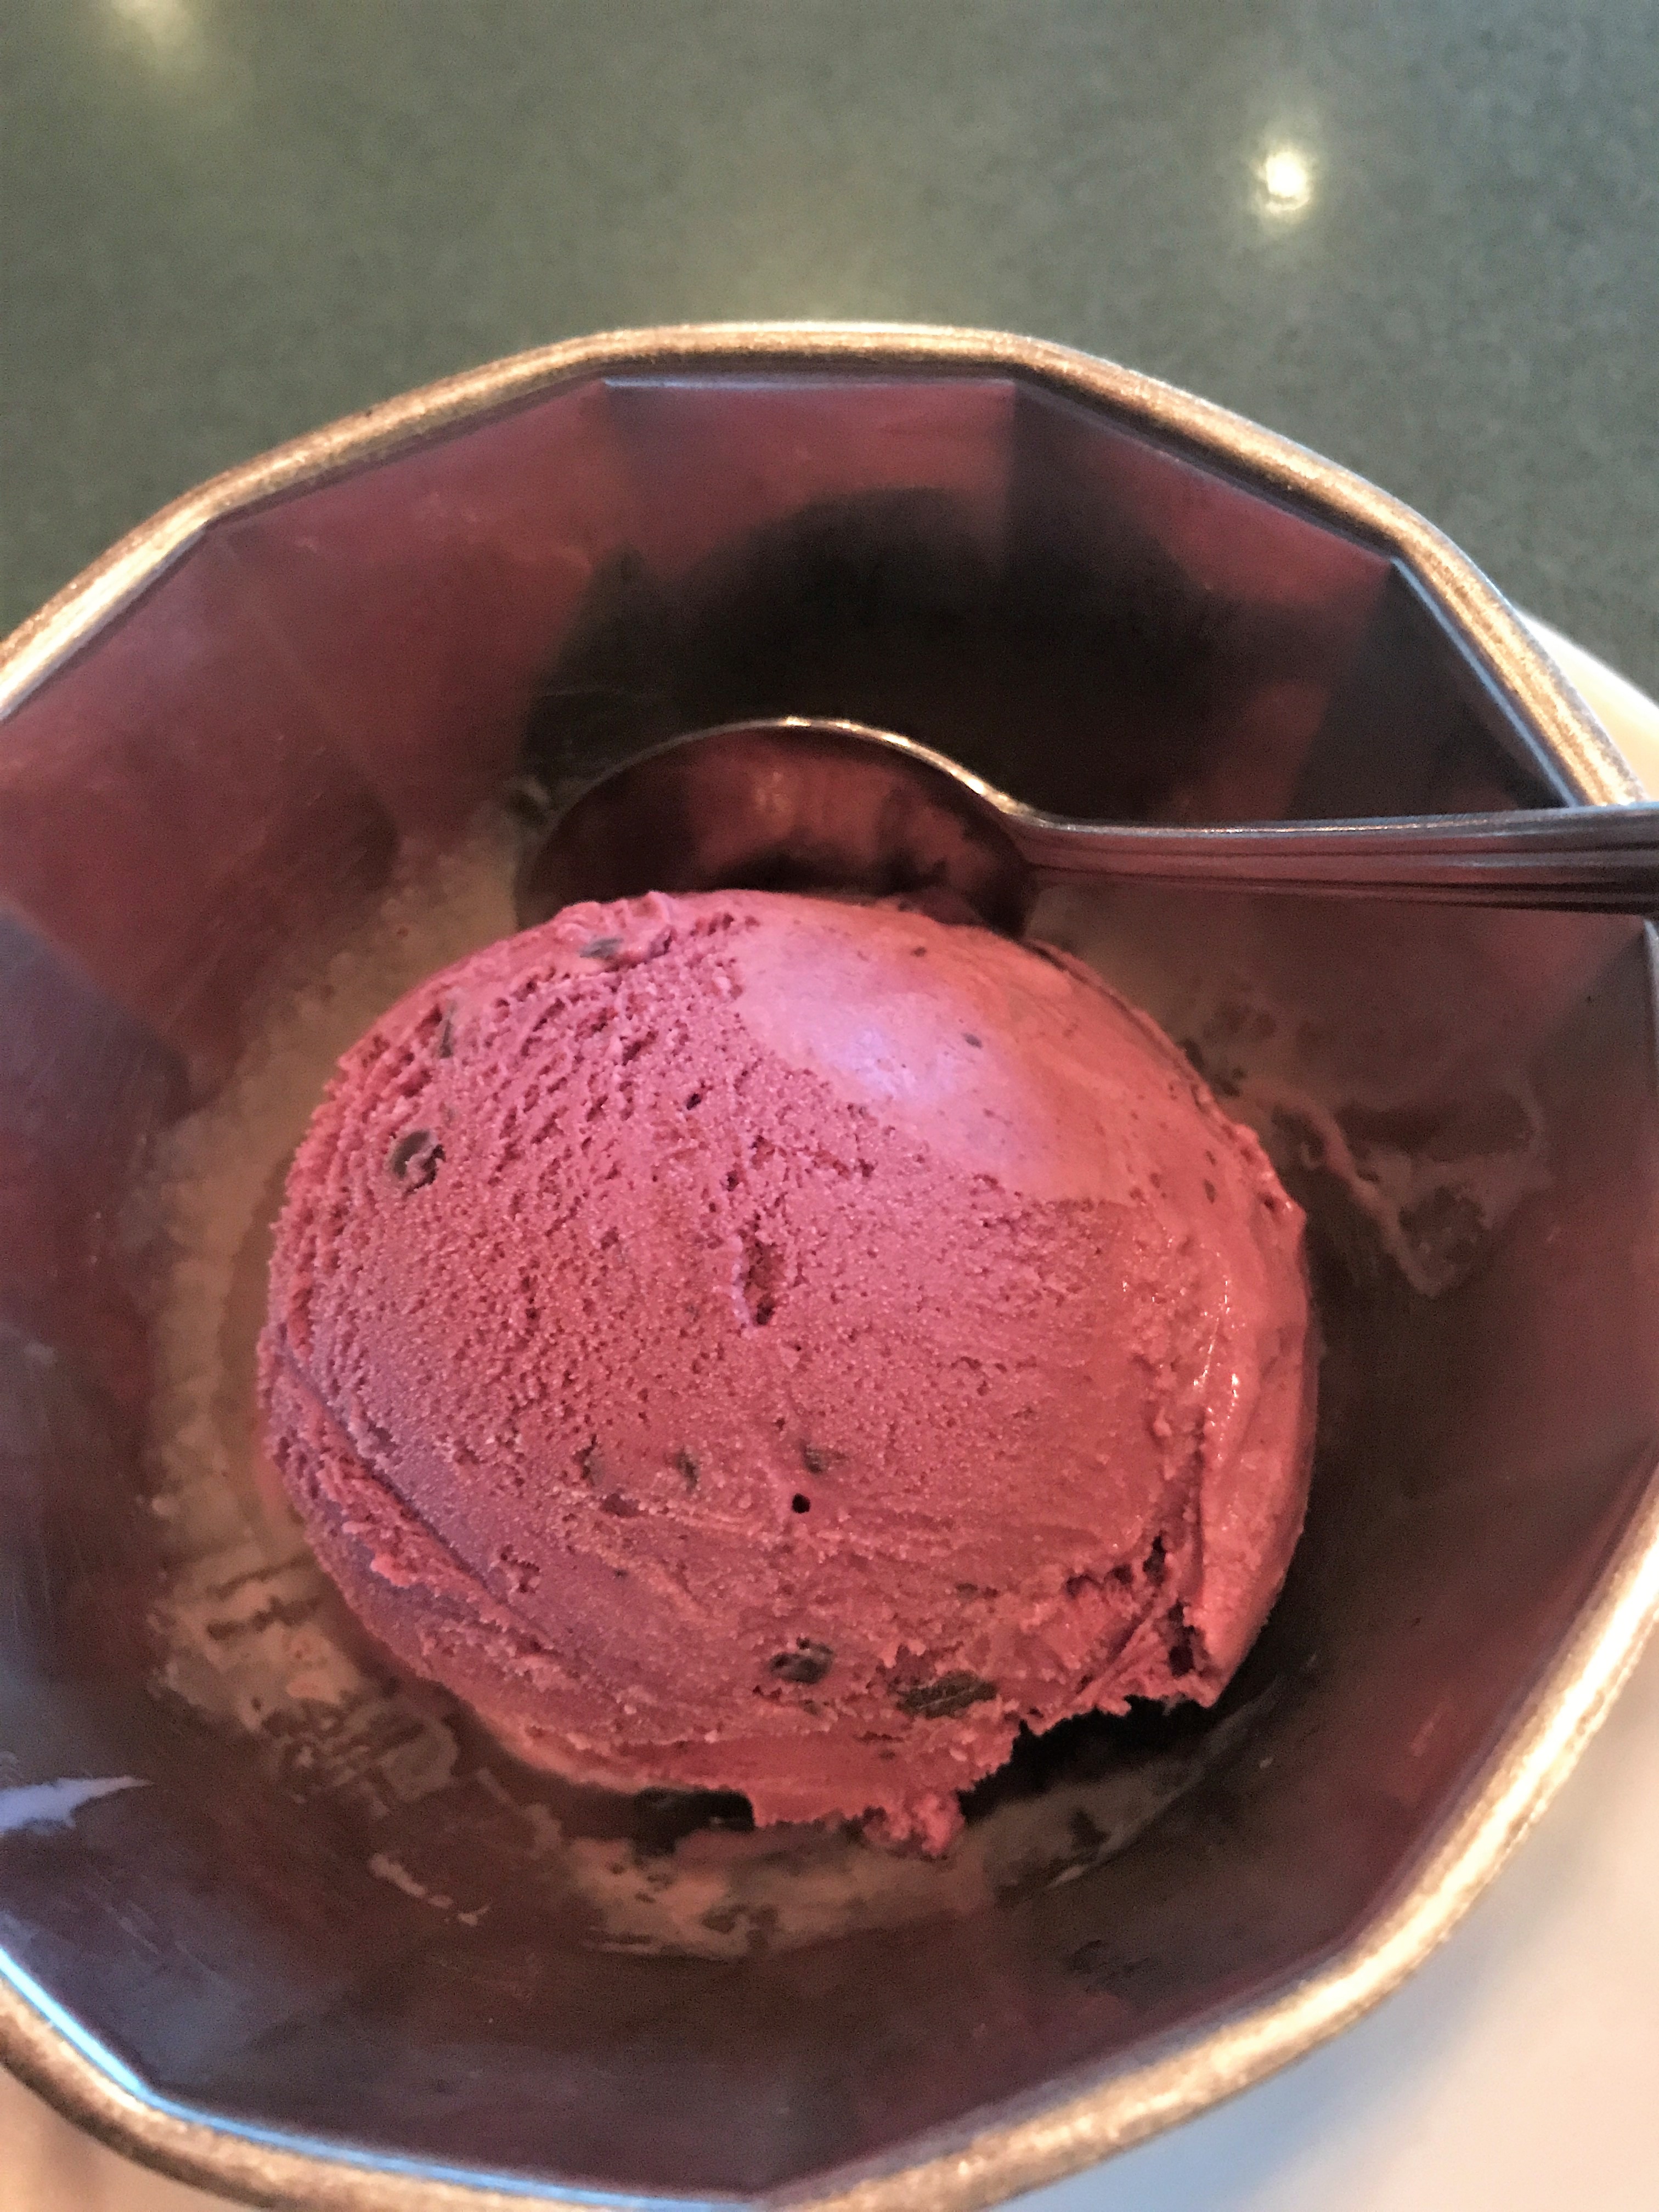 Signature flavor of Graeter's Ice Cream in Cincinnati Black Raspberry Chocolate Chip